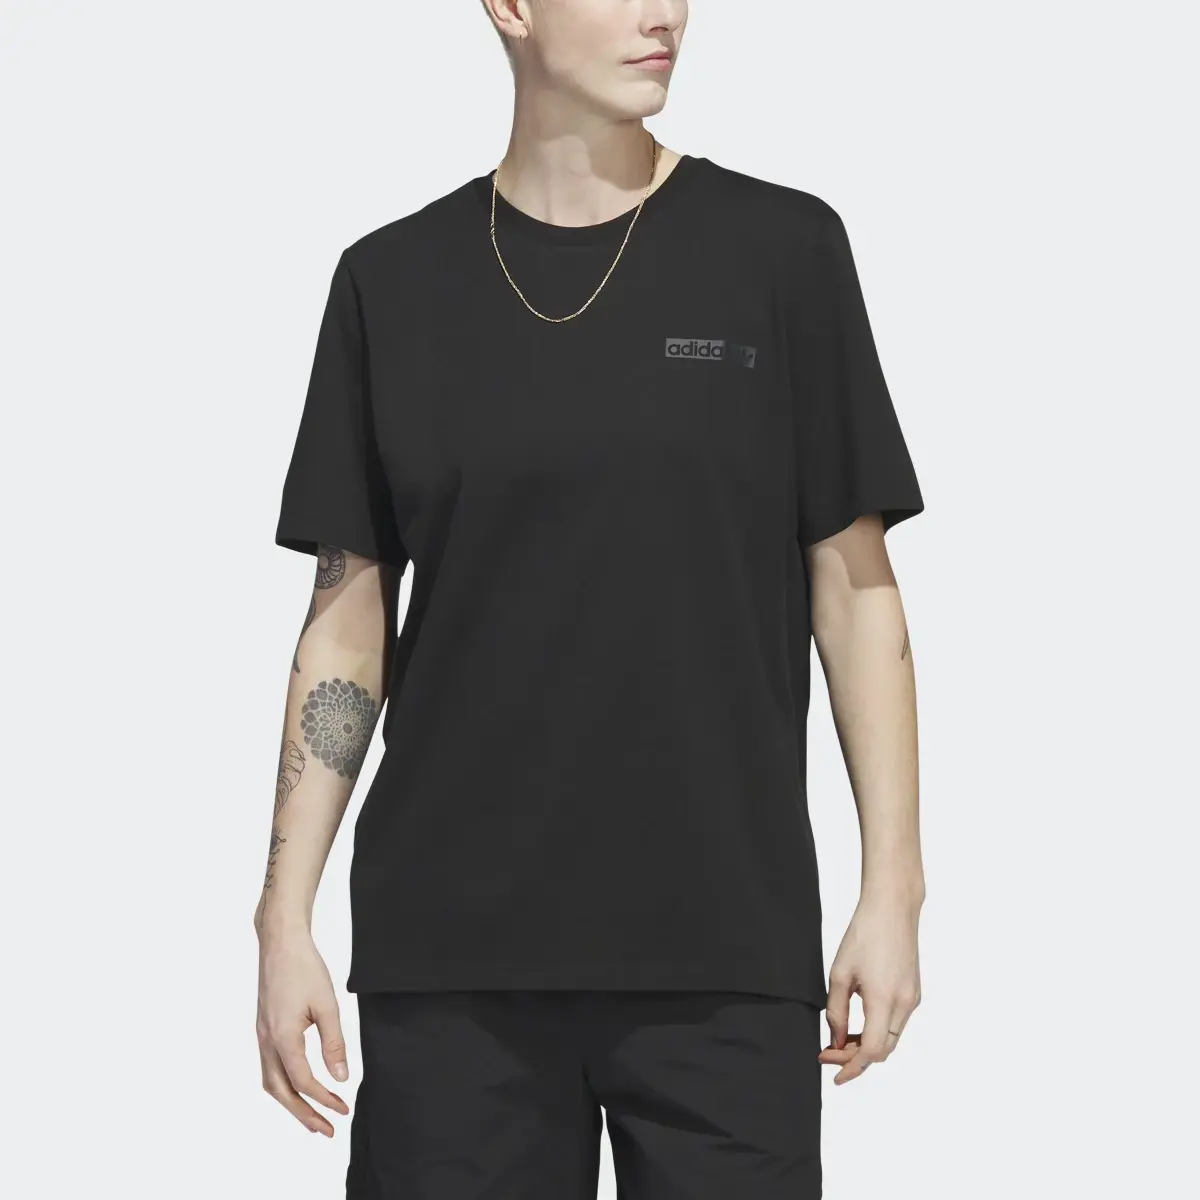 Adidas T-shirt 4.0 Circle. 1